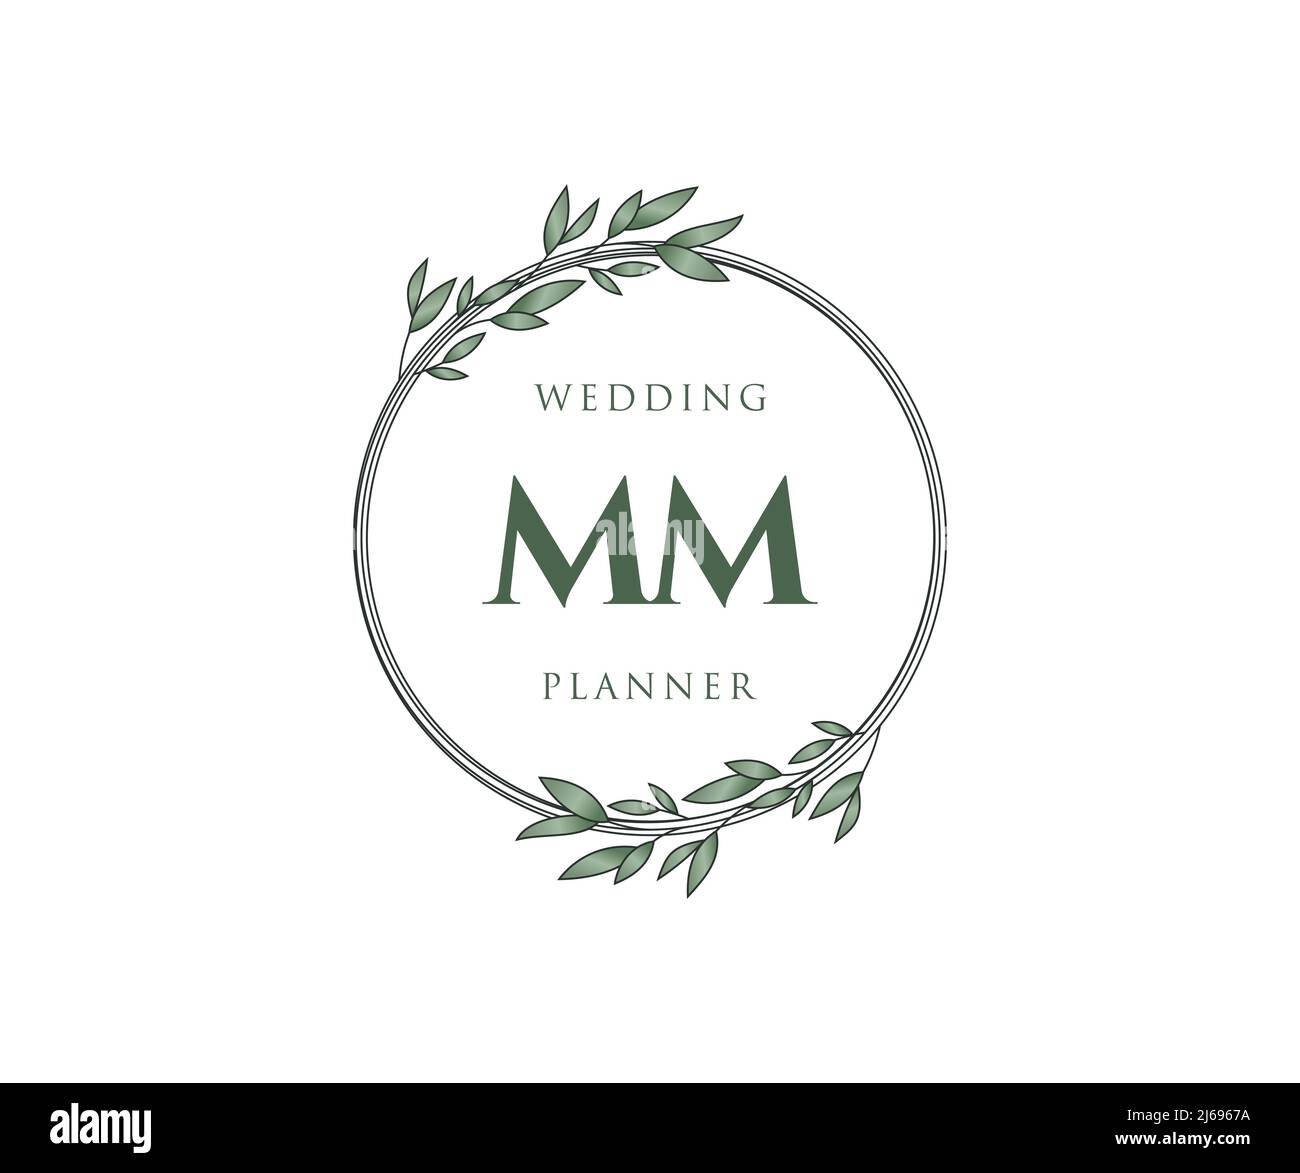 MM initial wedding monogram logo 15283030 Vector Art at Vecteezy